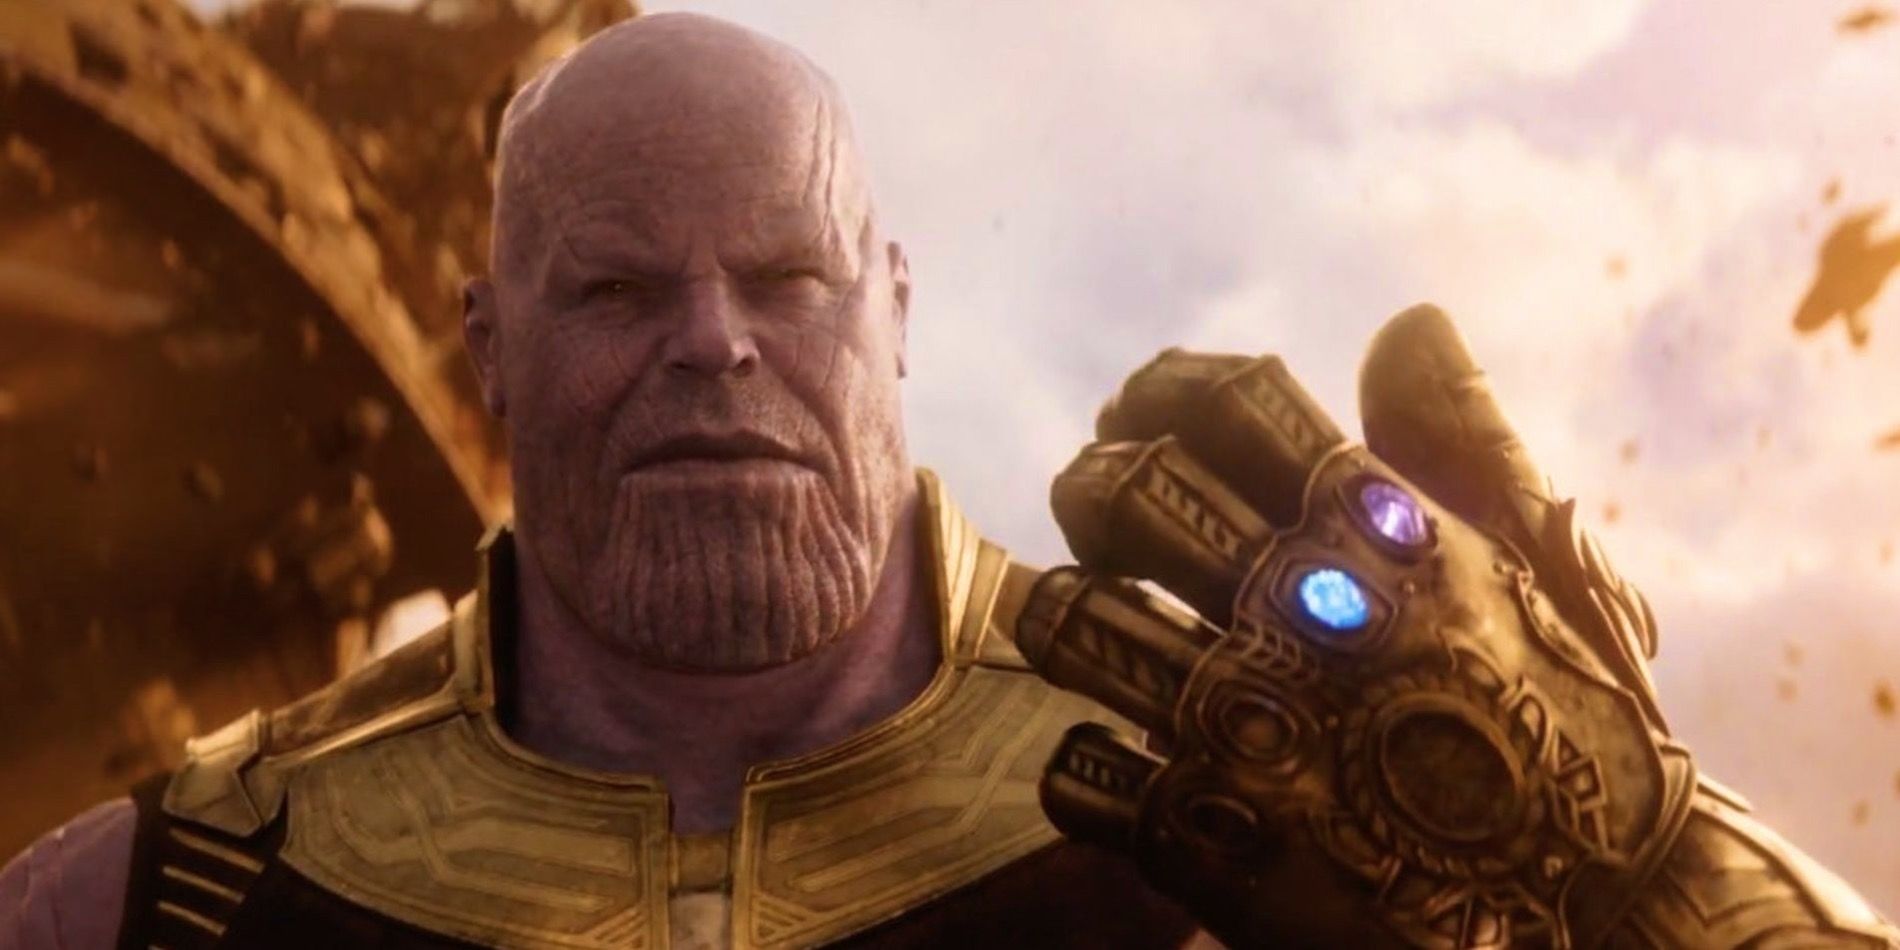 Thanos wielding the Infinity Gauntlet in Infinity War.